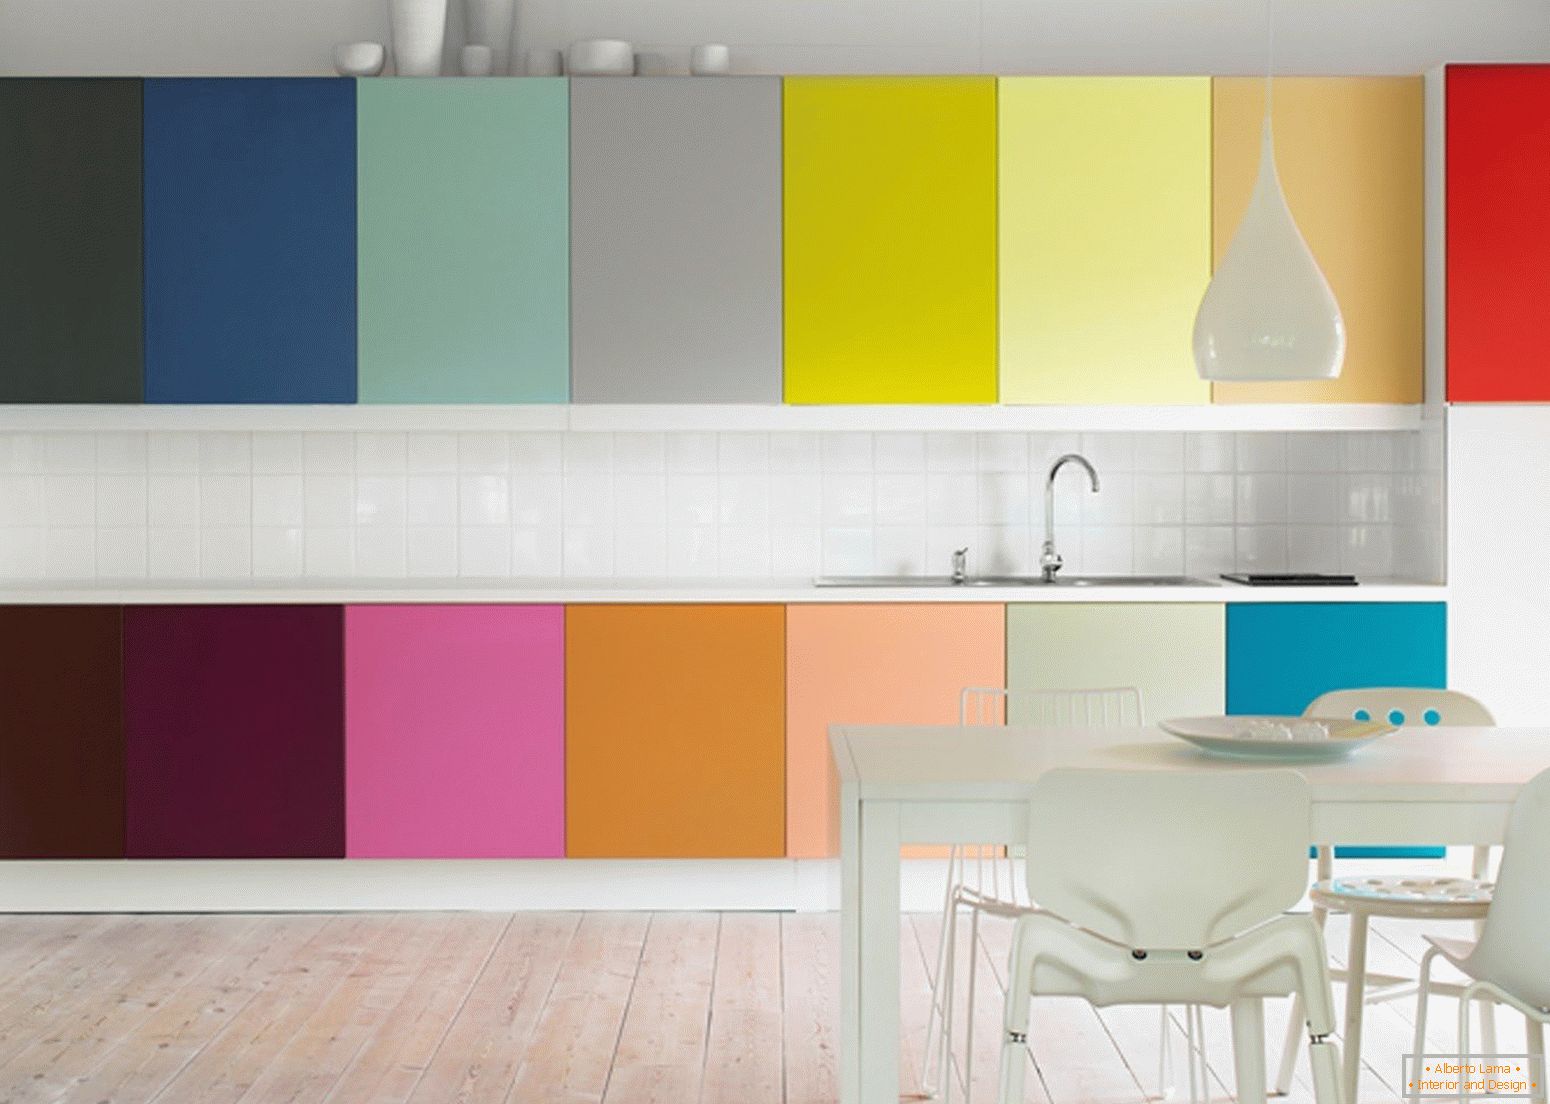 Schema de culori în bucătărie